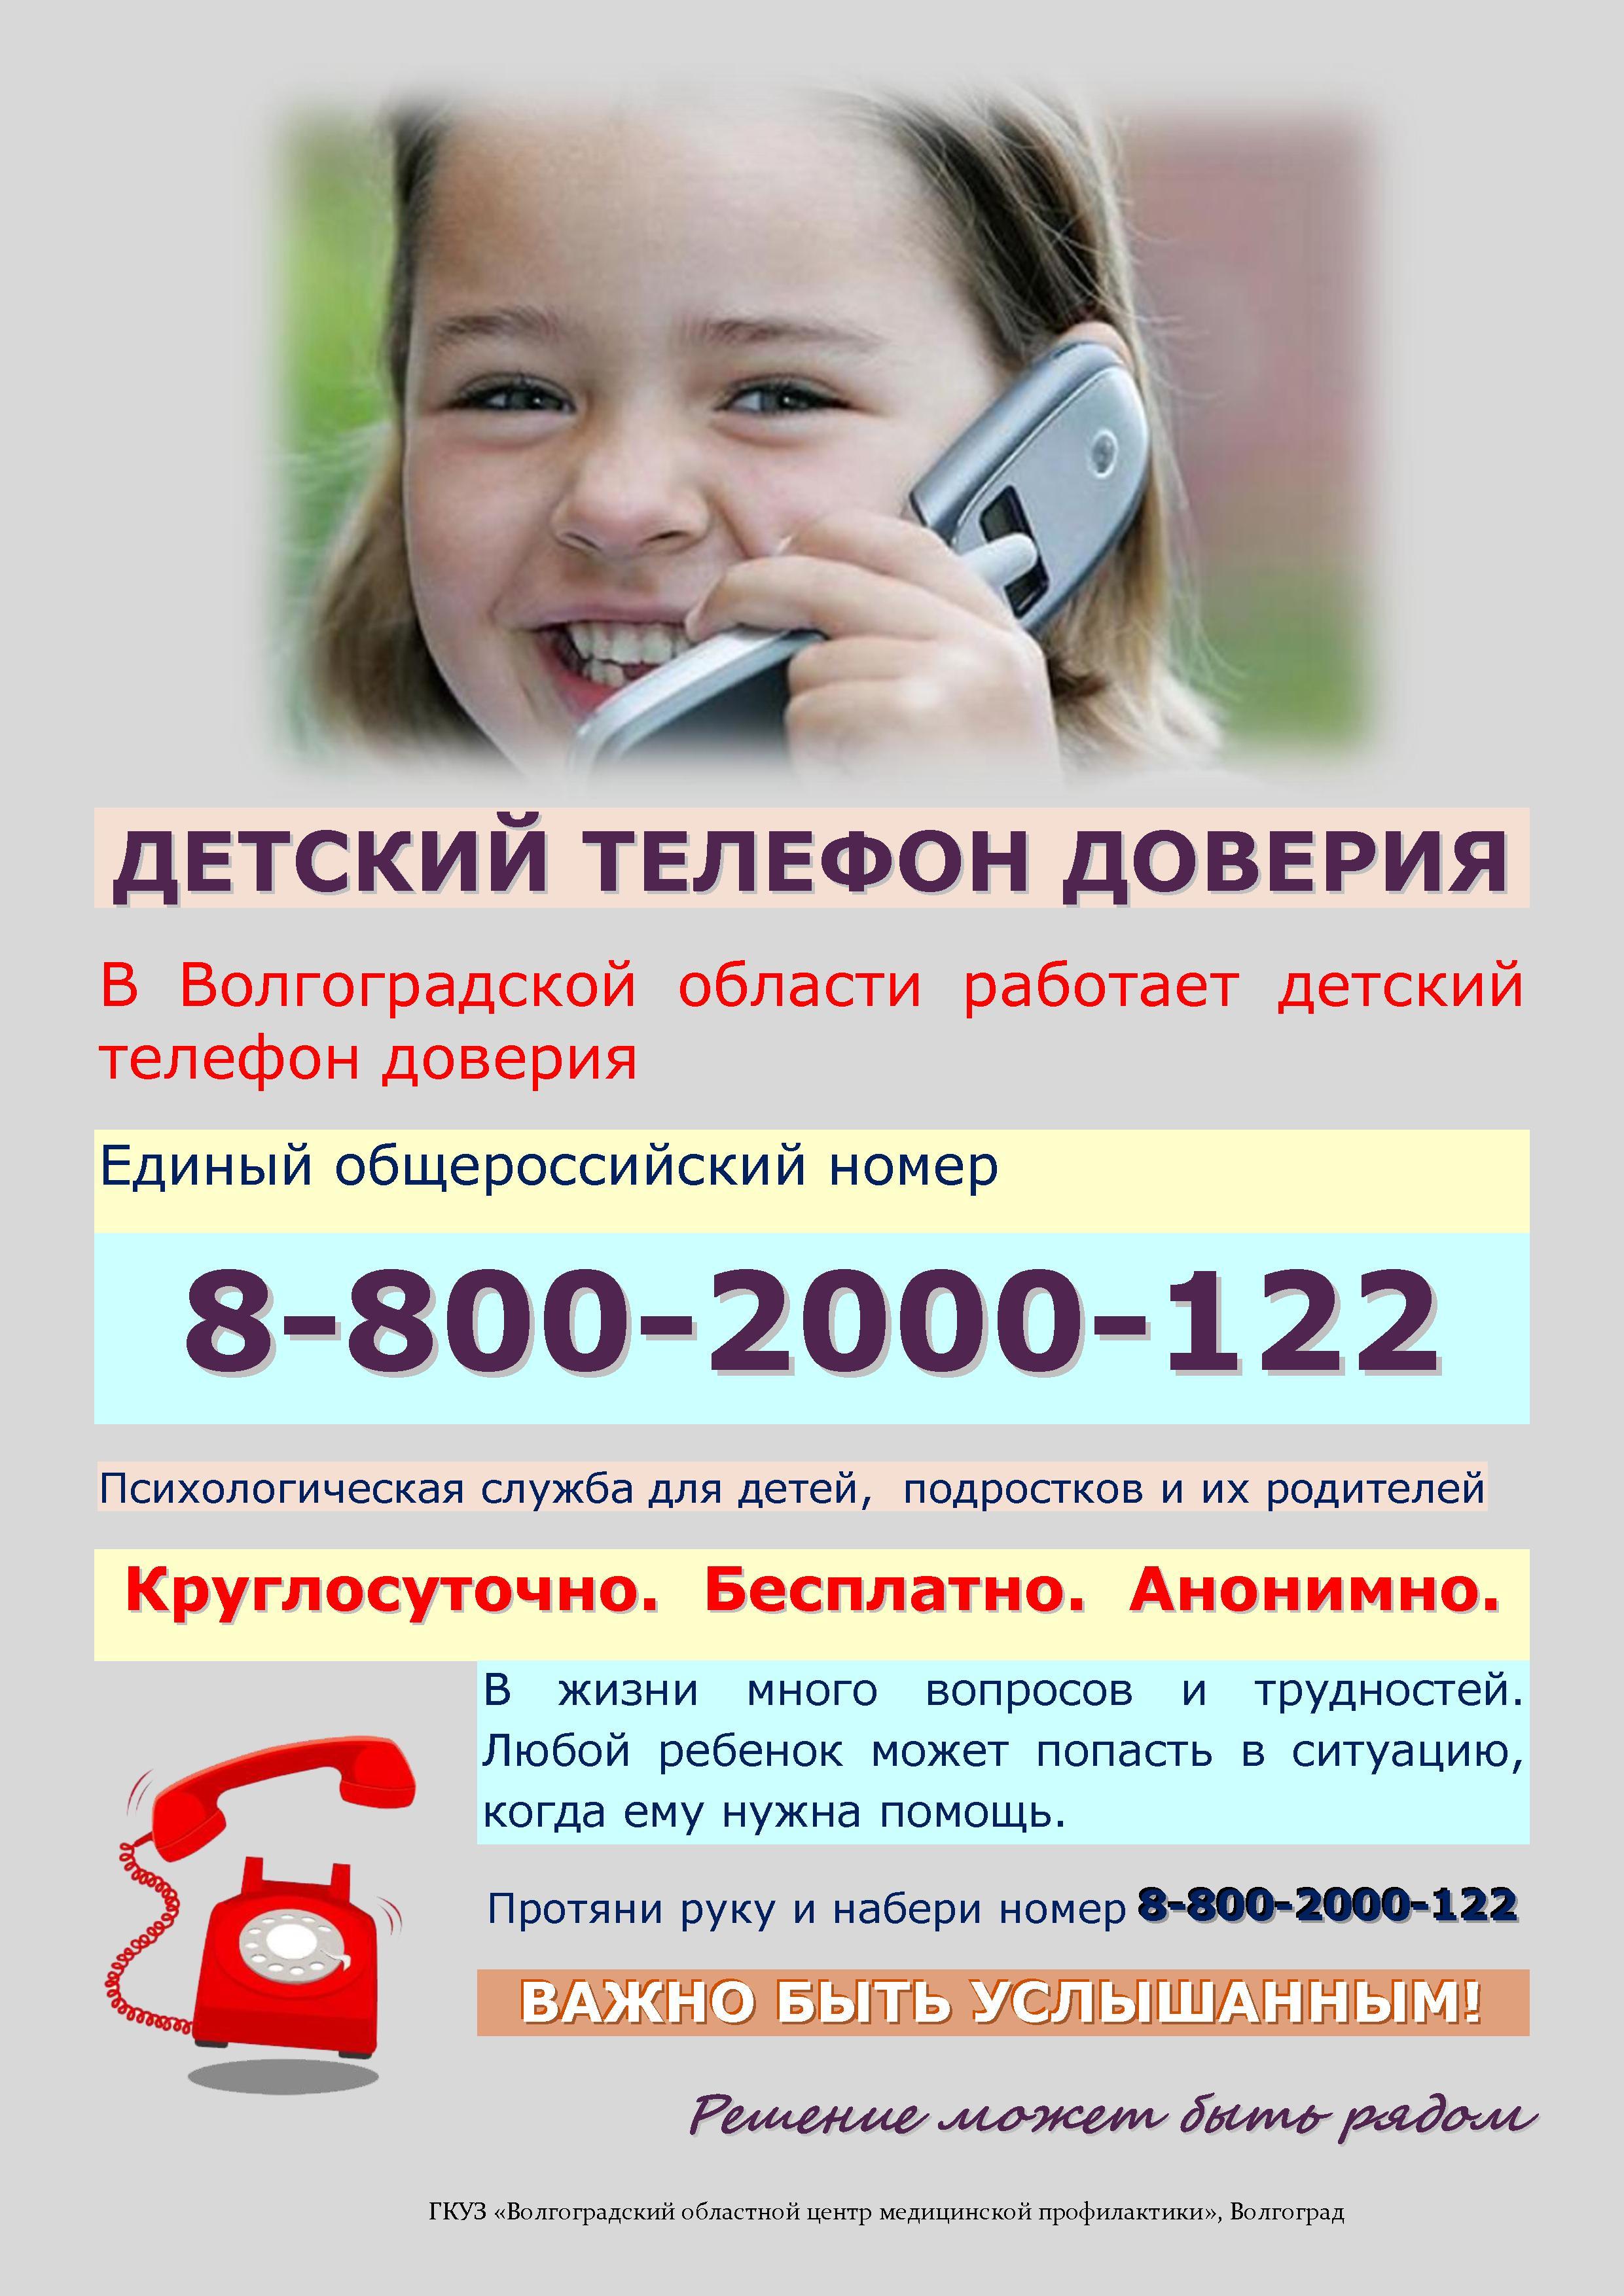 Номер телефона детского дома. Телефон доверия. Детский телефон доверия. Телефон доверия для детей подростков и их родителей. Служба детского телефона доверия.